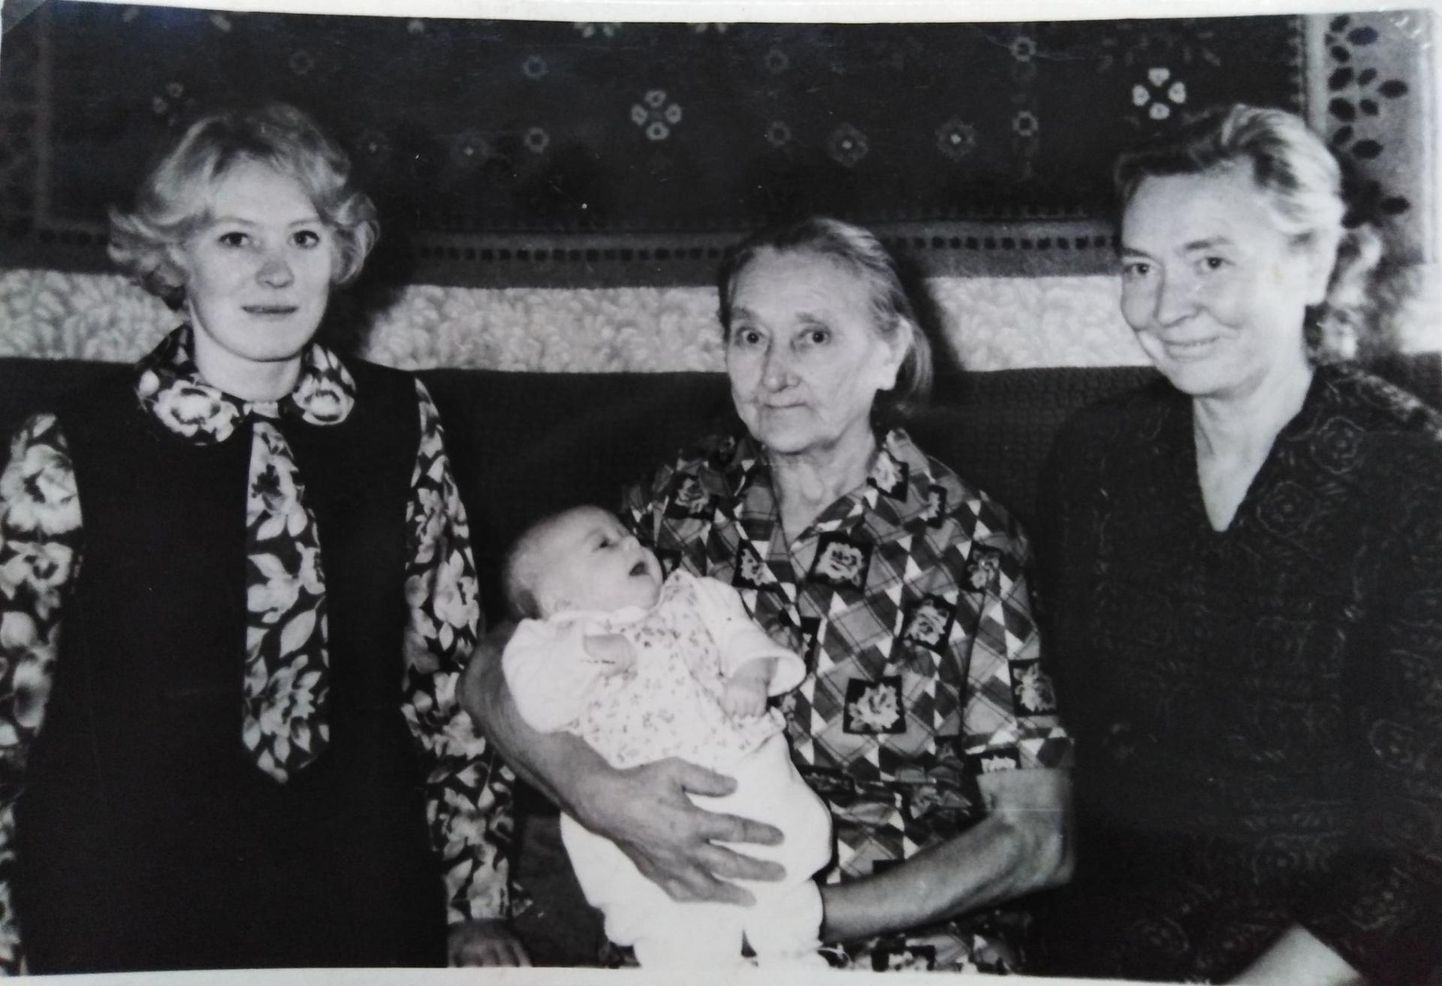 On aasta 1969. Vasakult: Leili, vanavanaema Ida, süles vastsündinud Aili Teedla, ja vanaema Ellen.